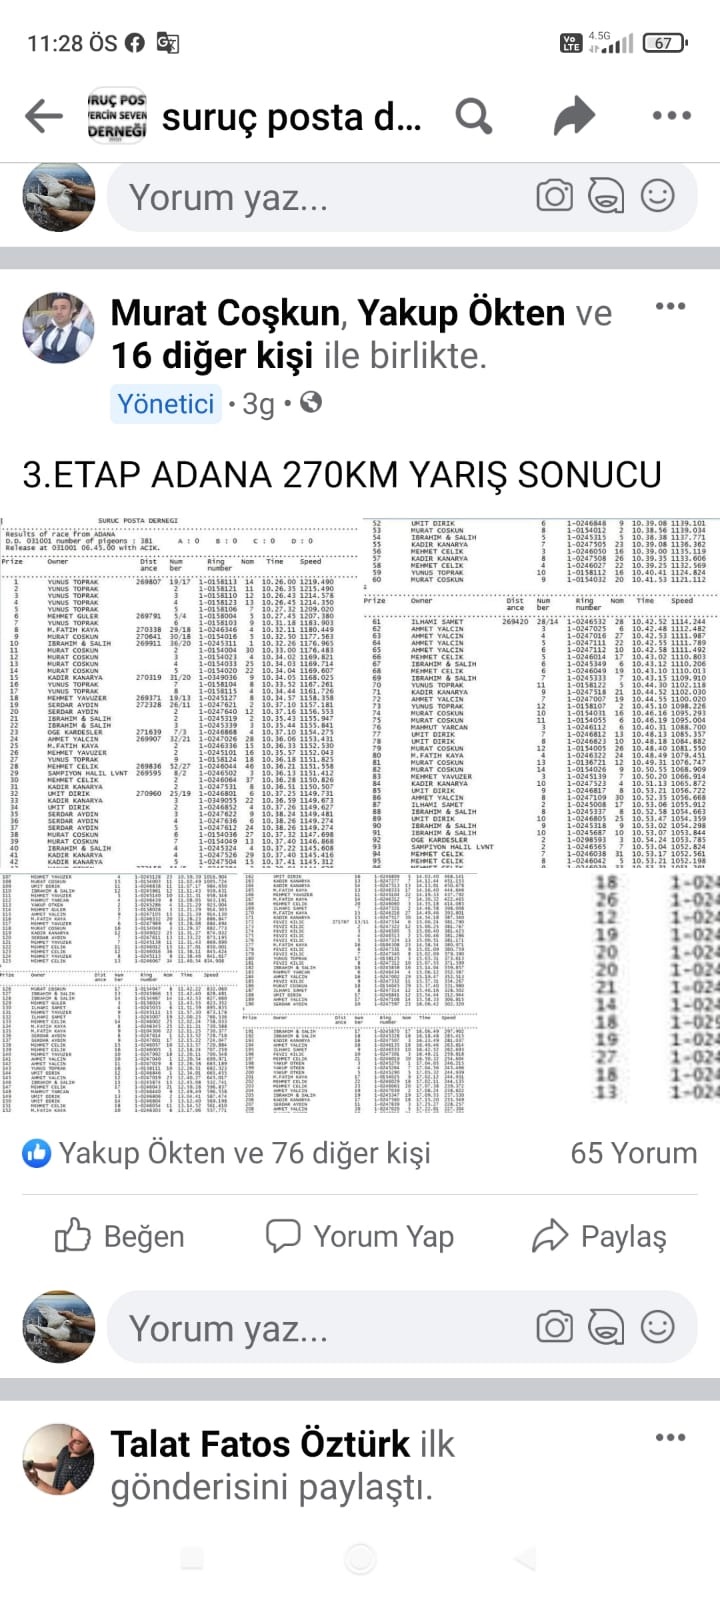 TR21-245272 / SALİH POSTACI - 12 FİNAL 250 KM -  20. AS GÜVERCİN 5X5